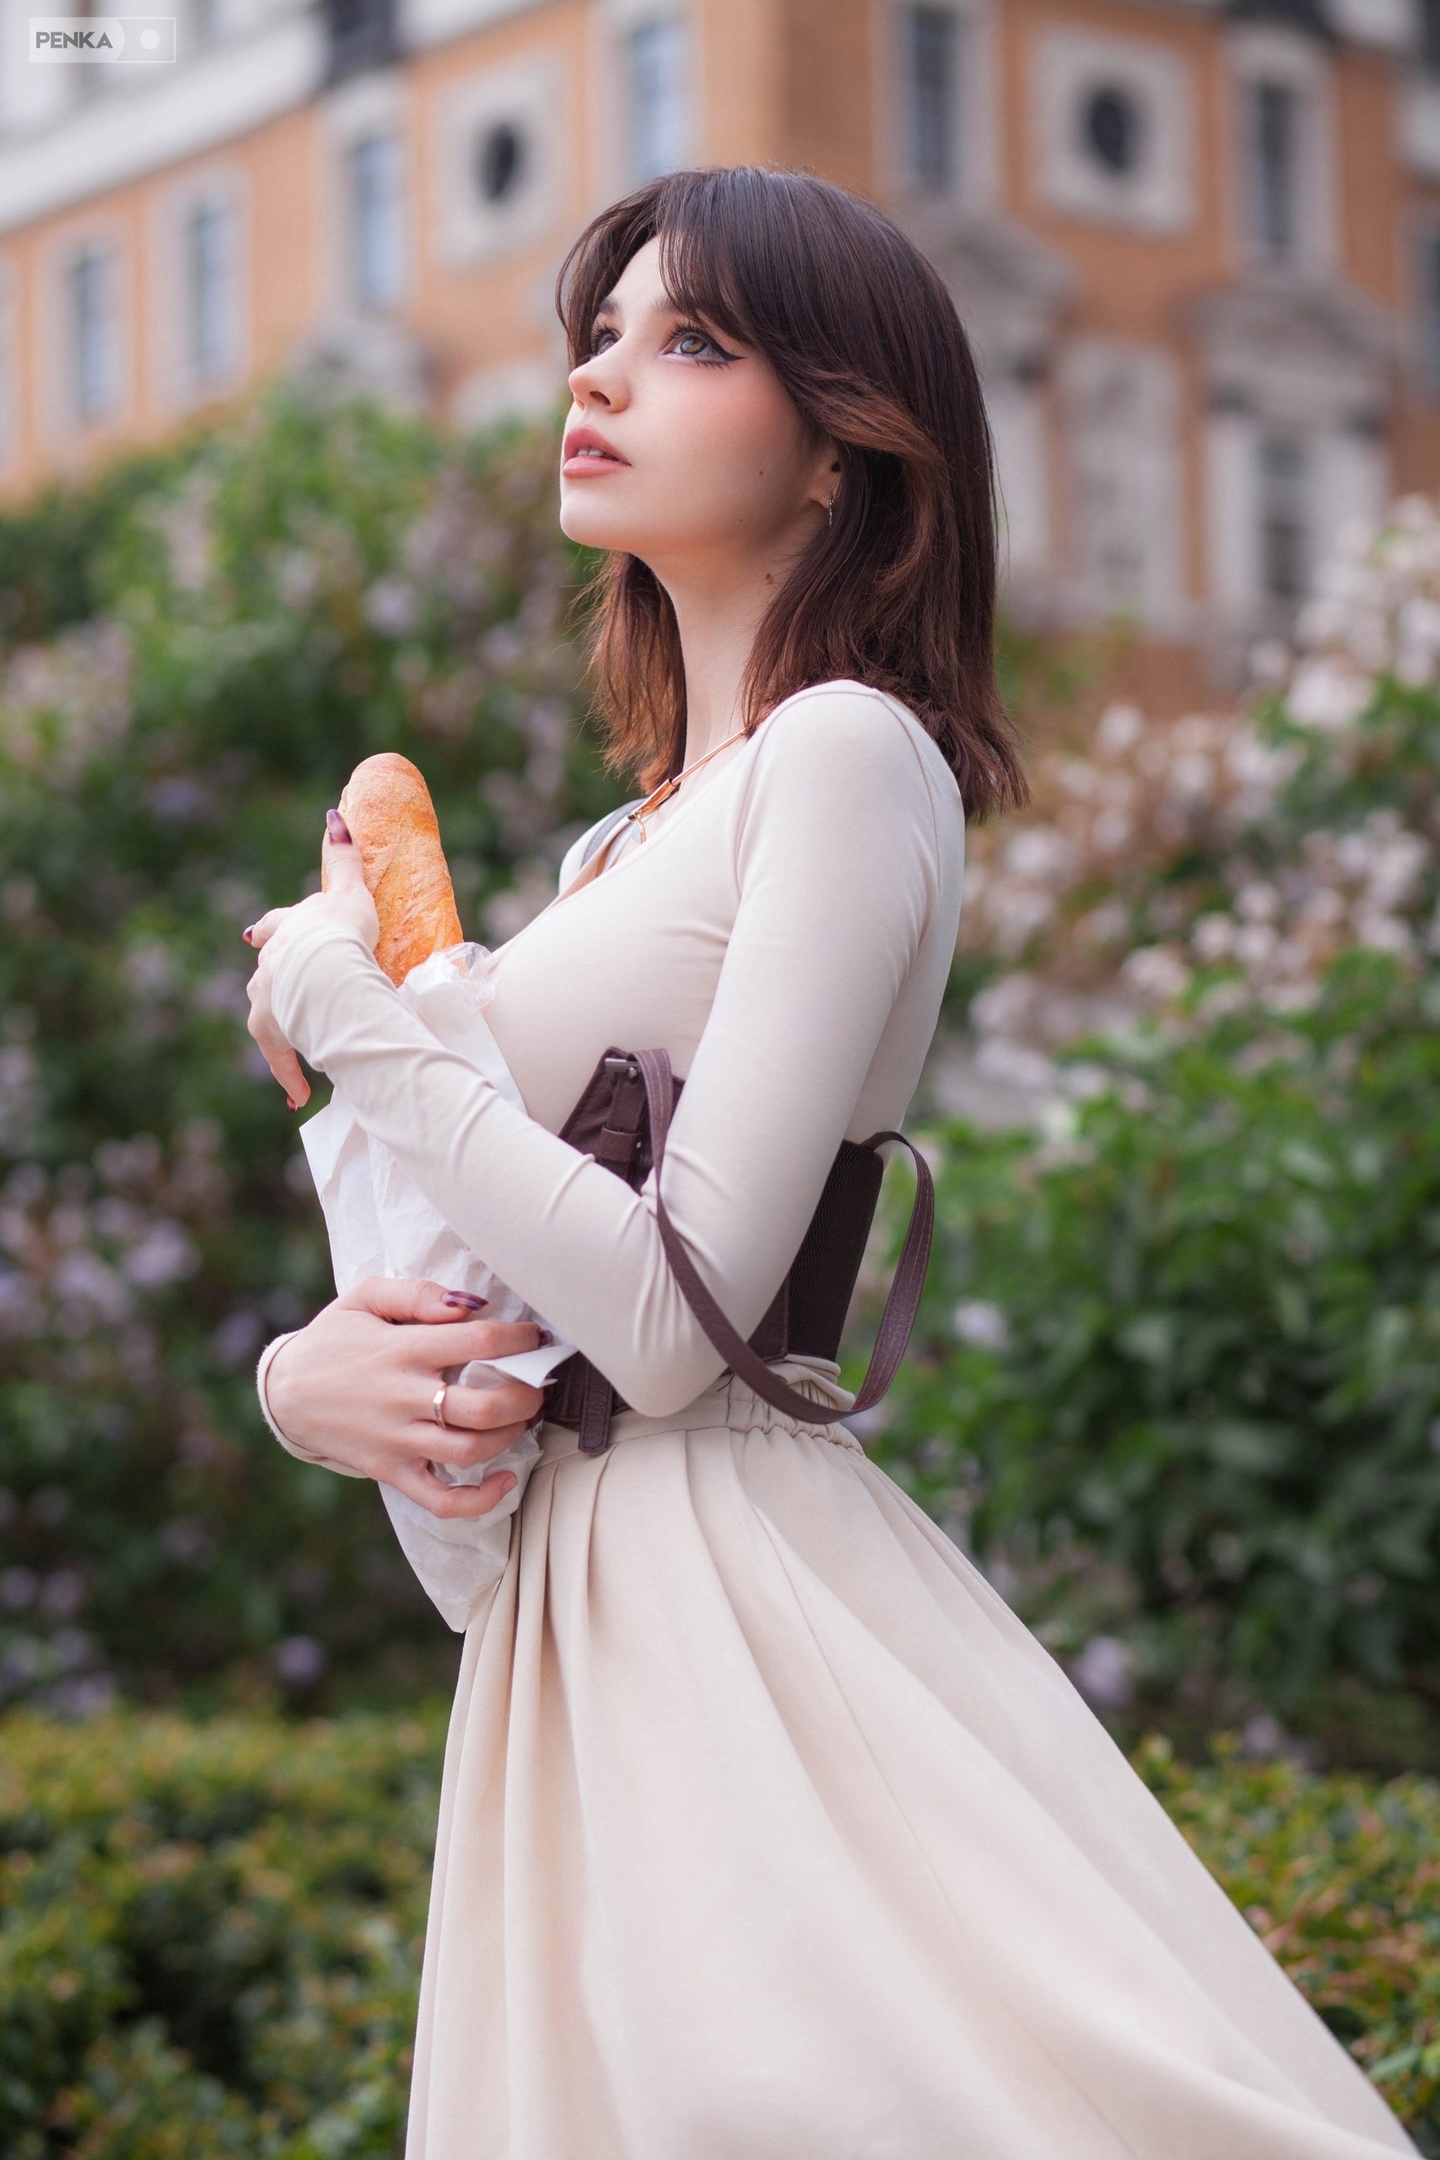 Penka Rui Women Dress Outdoors Bread Baguette Brunette Model White Dress Women Outdoors 1440x2160